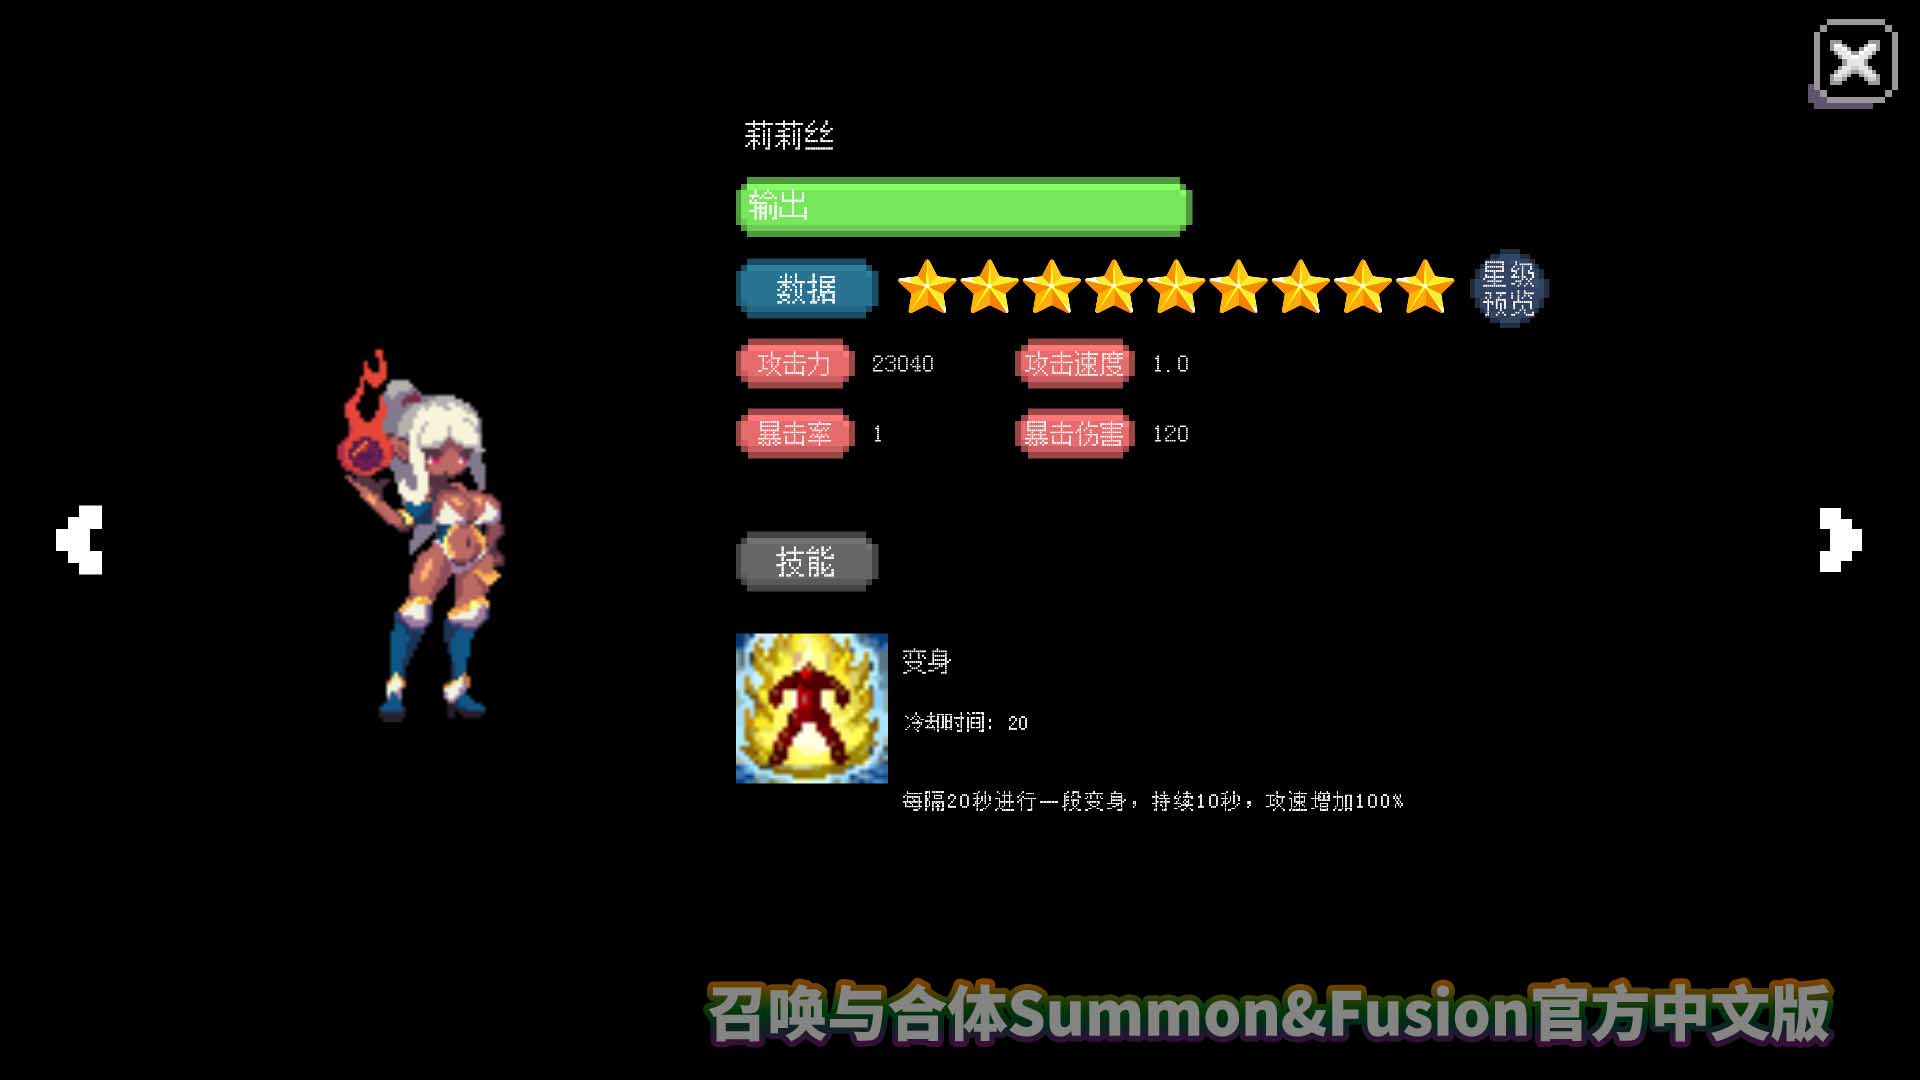 【塔防SLG】召唤与合体Summon&Fusion 官方中文版+全CG存档【网盘下载】